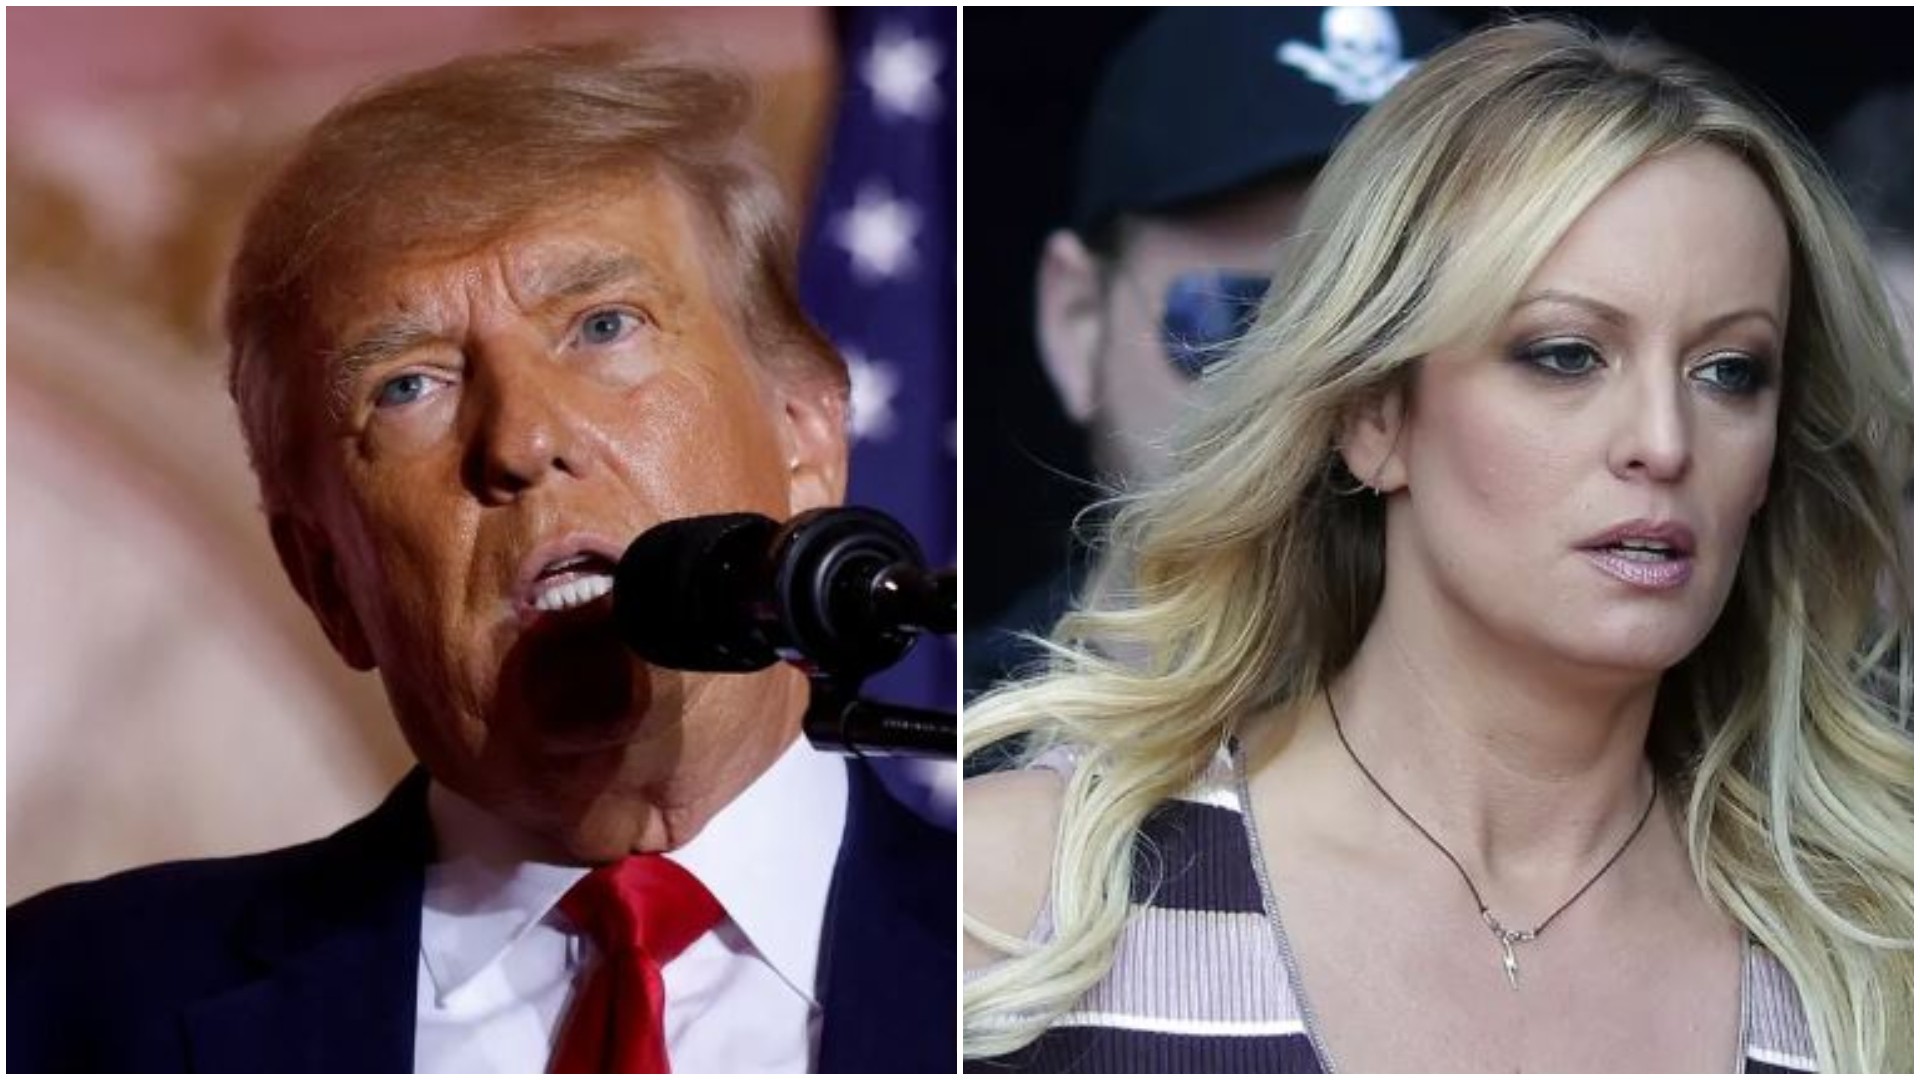 'Foi horrível, mas eu não disse não': o que a atriz pornô Stormy Daniels diz sobre a relação sexual com Donald Trump